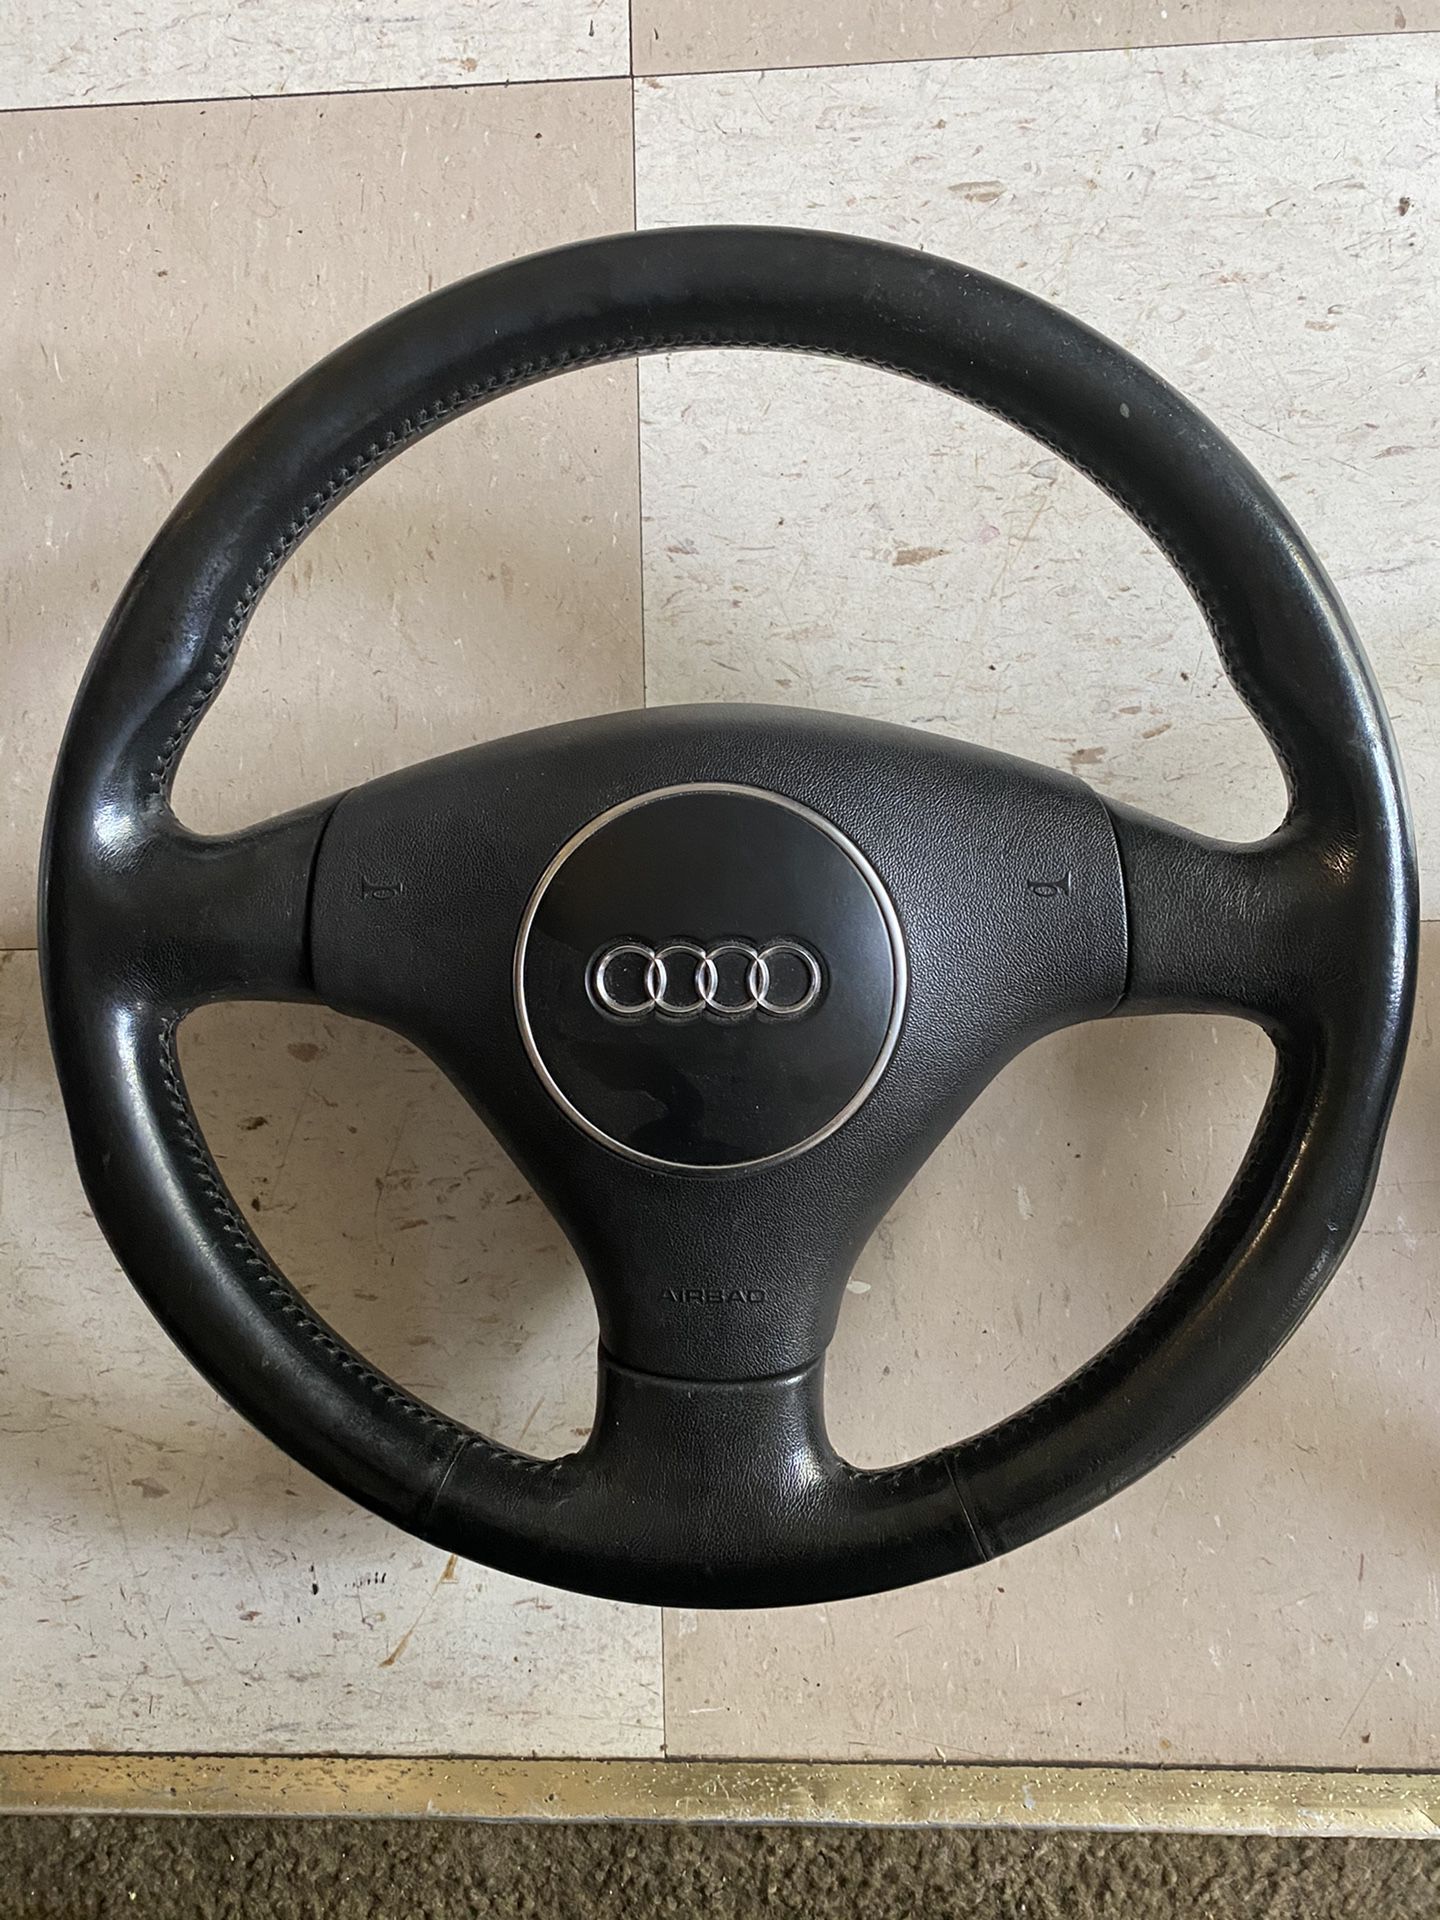 2001 Audi Steering Wheel